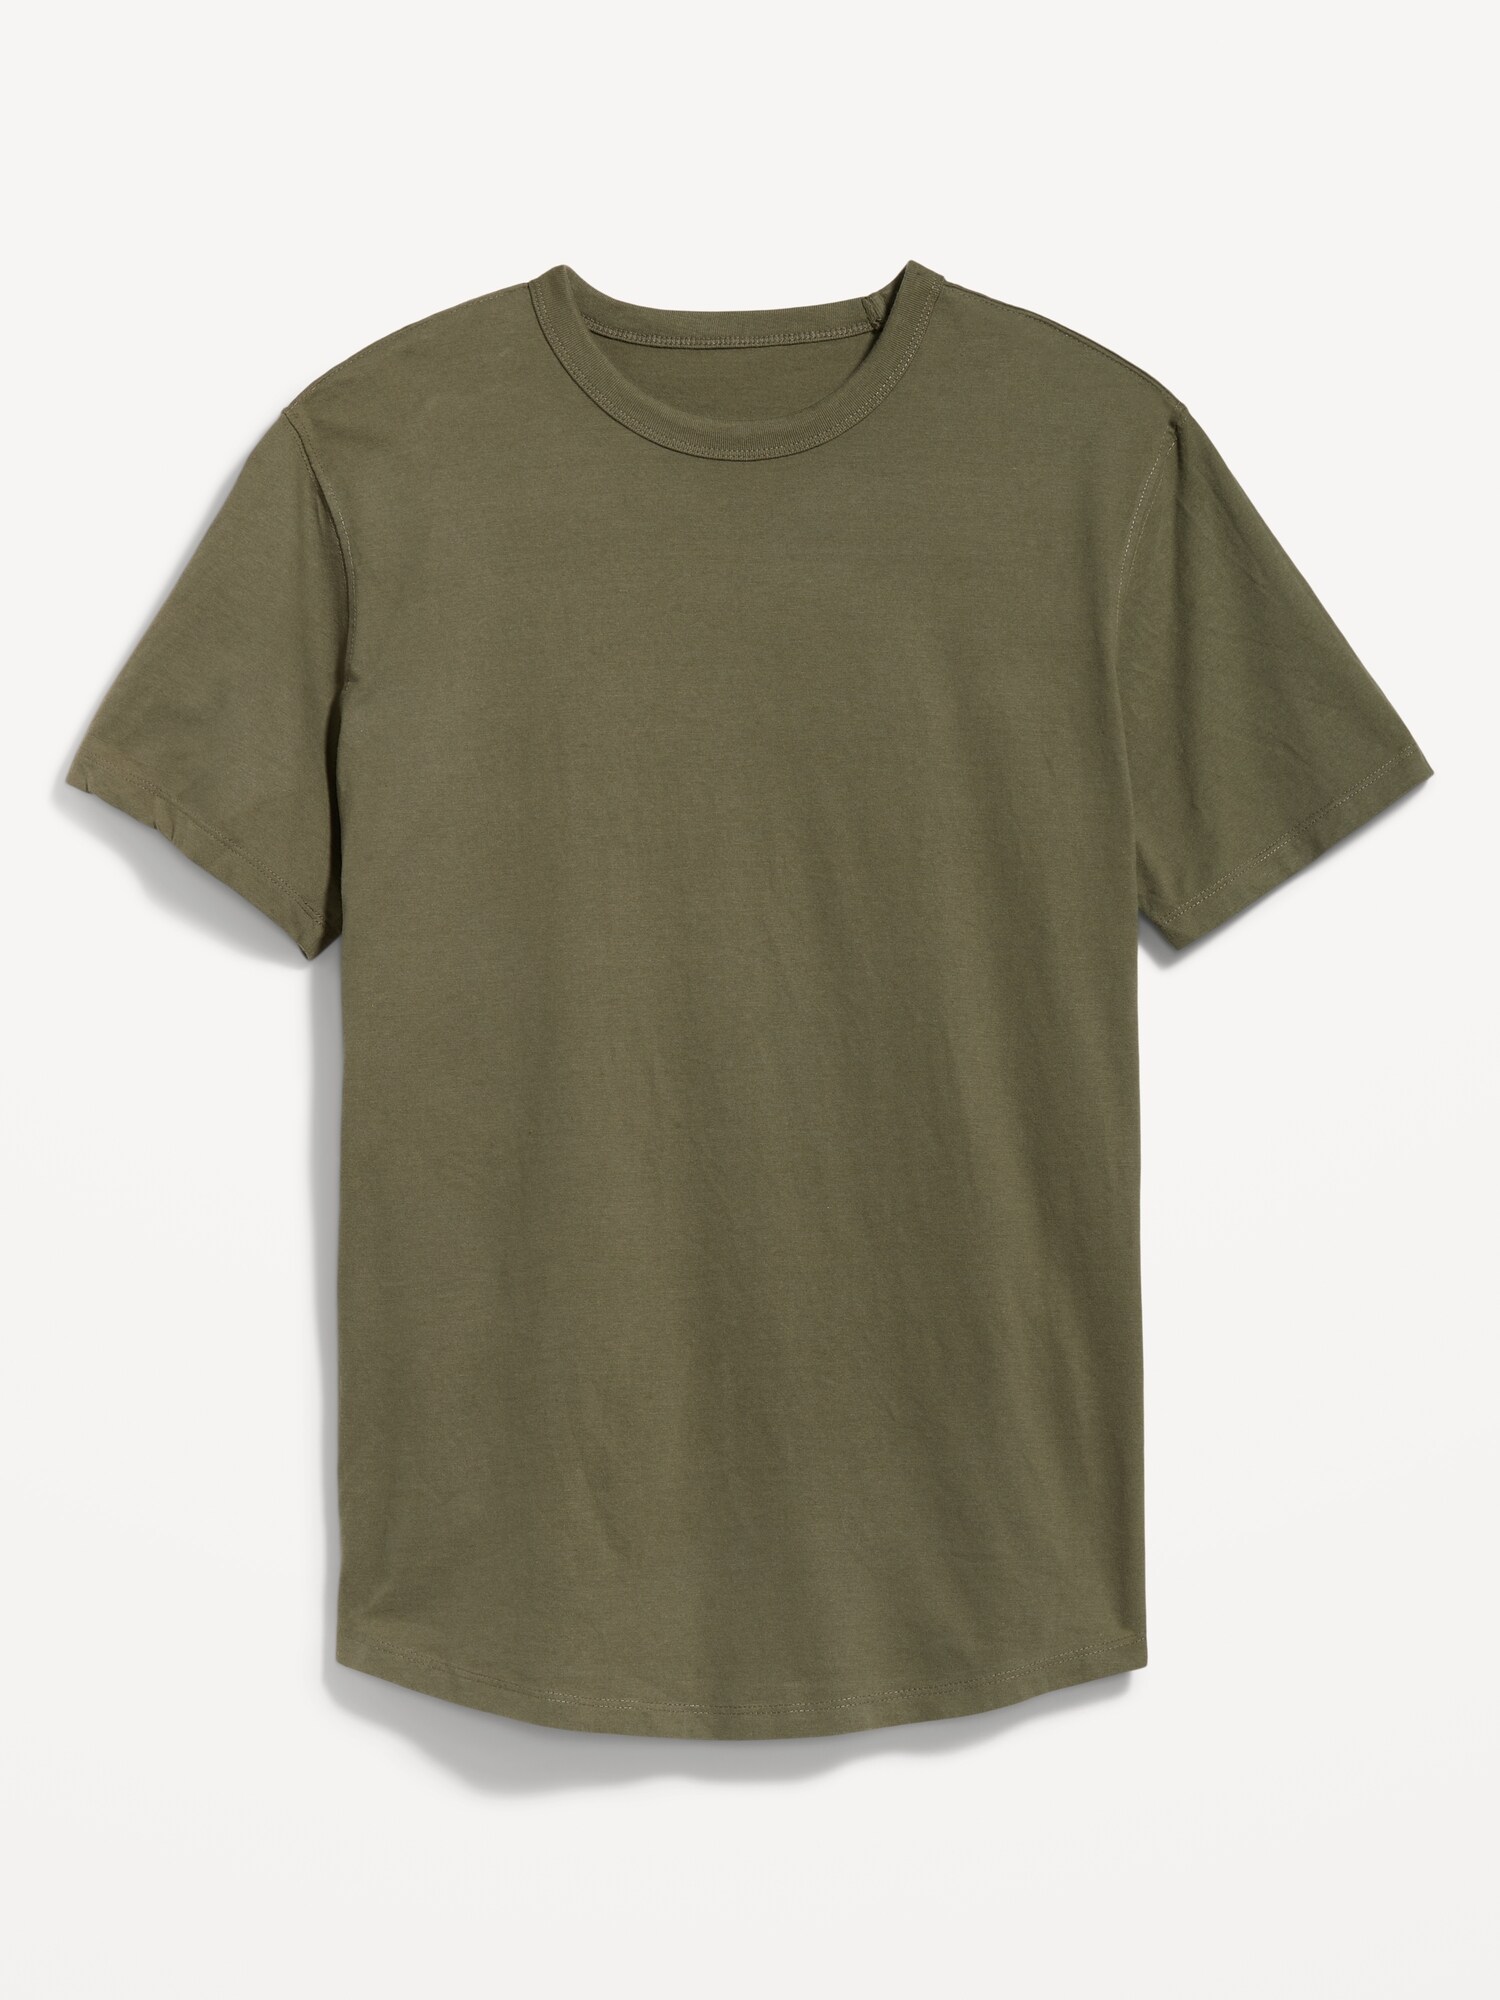 Soft-Washed Curved-Hem T-Shirt for Men | Old Navy